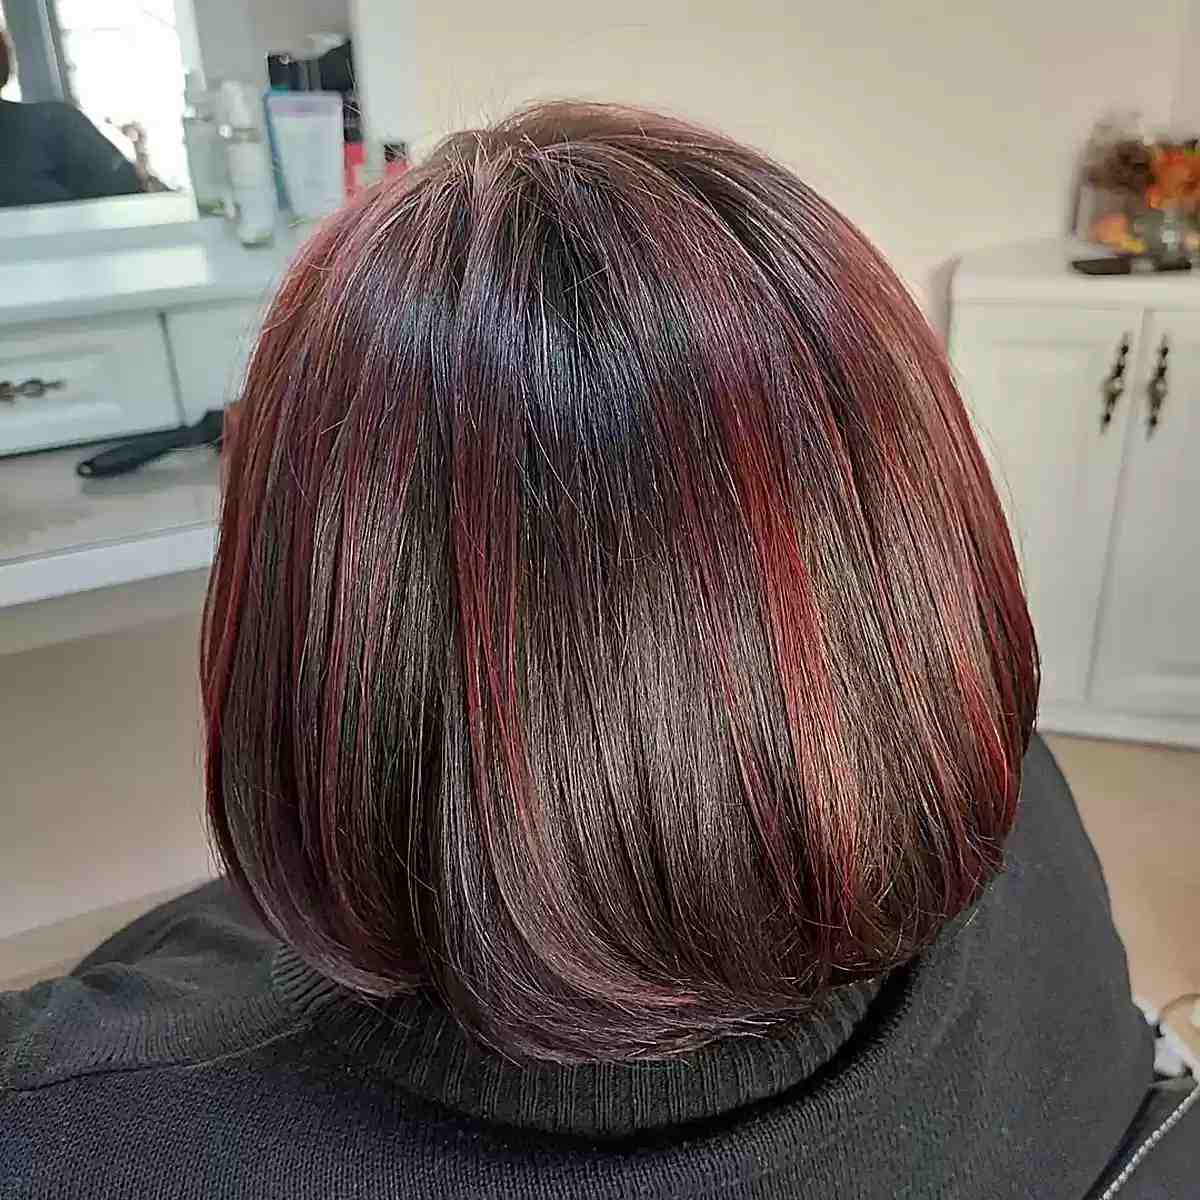 Brilho vermelho de cor Merlo para cabelos castanhos escuros curtos